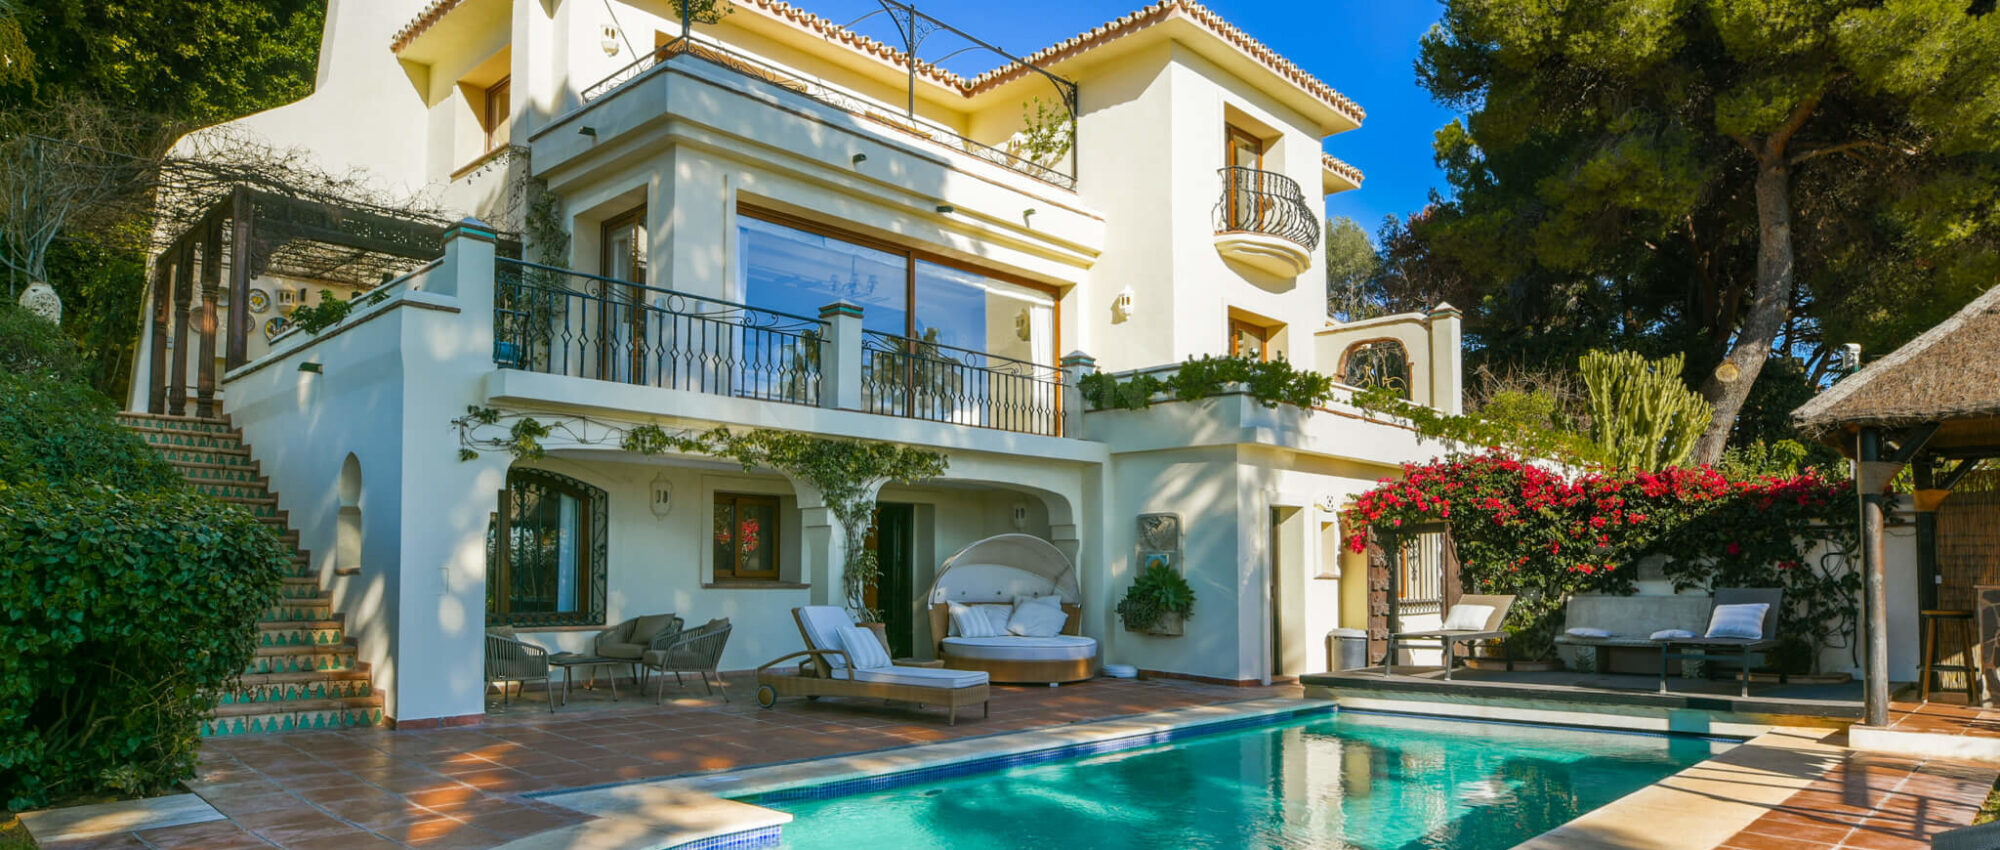 Außergewöhnliches Einfamilienhaus in Rio Real, Marbella